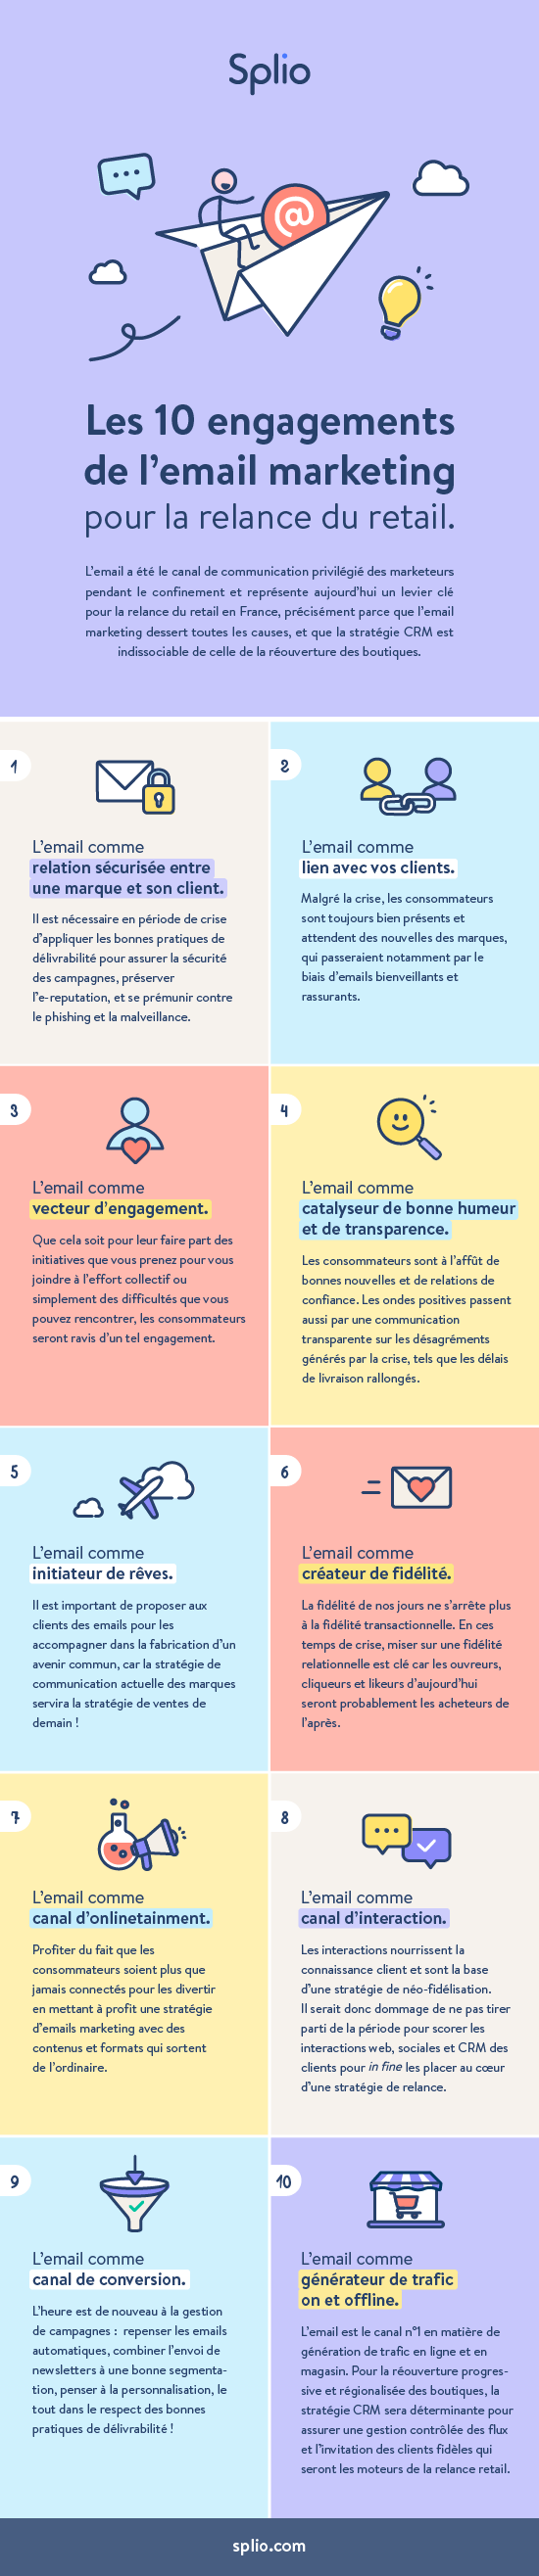 Infographie - Les 10 engagements de l'email marketing